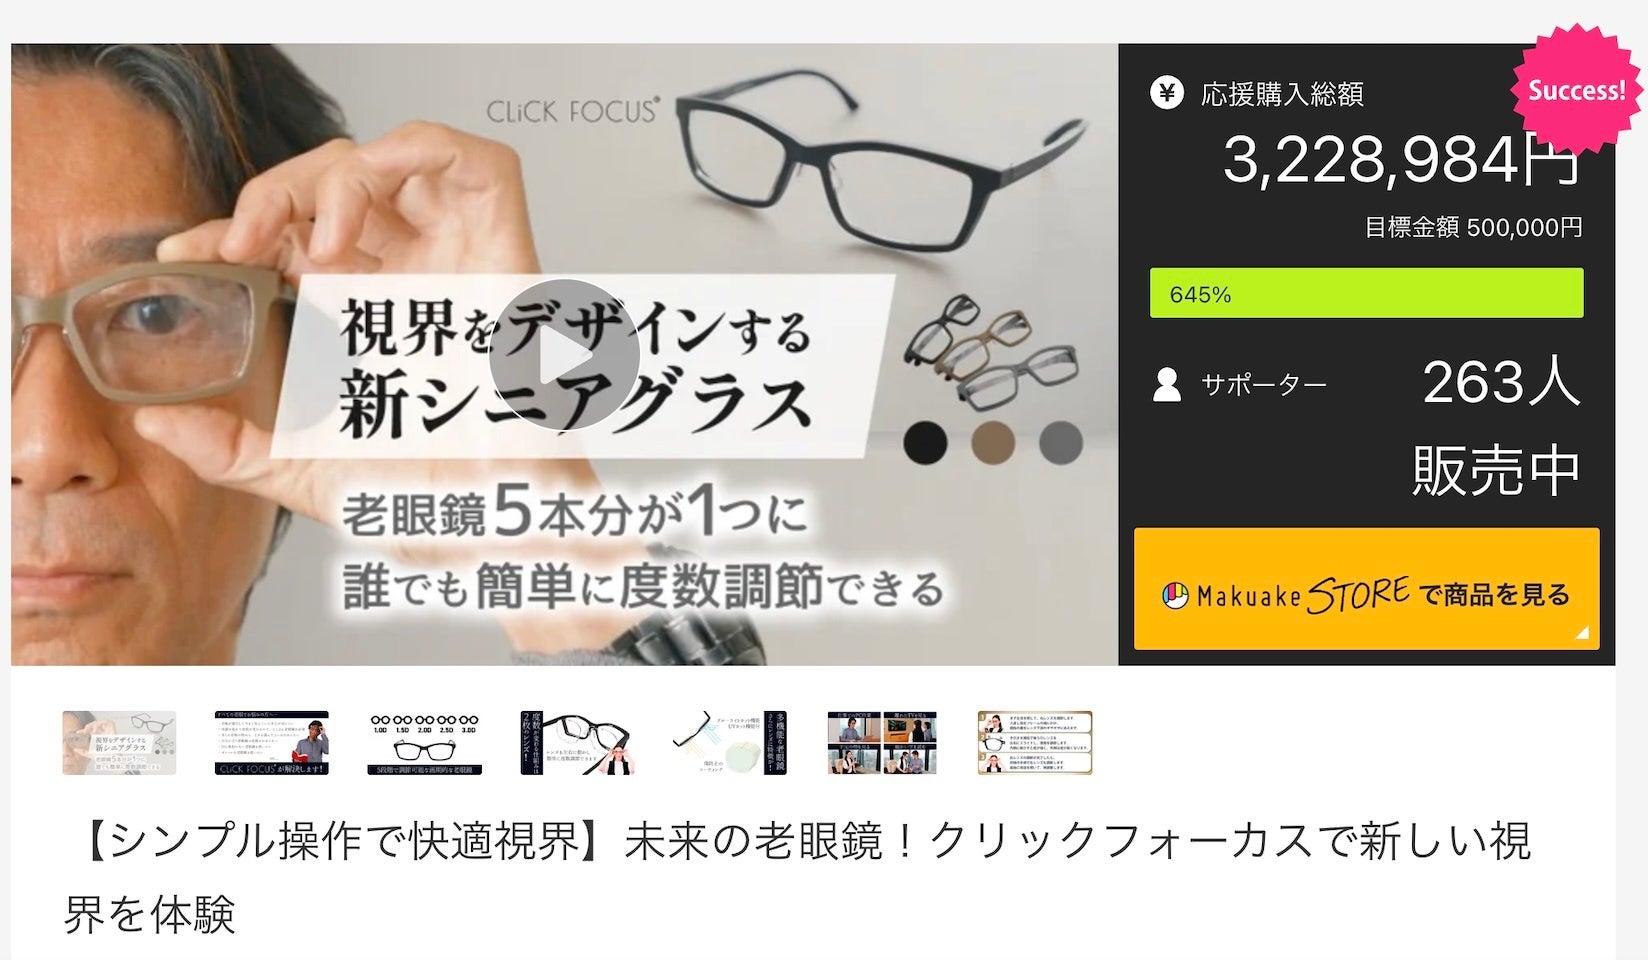 目標金額645％達成！株式会社プレスビー老眼鏡の進化形「クリックフォーカス」アタラシイものや体験の応援購入サービス”「Makuake（マクアケ）」にて販売開始約3時間で目標金額を達成し盛況終了